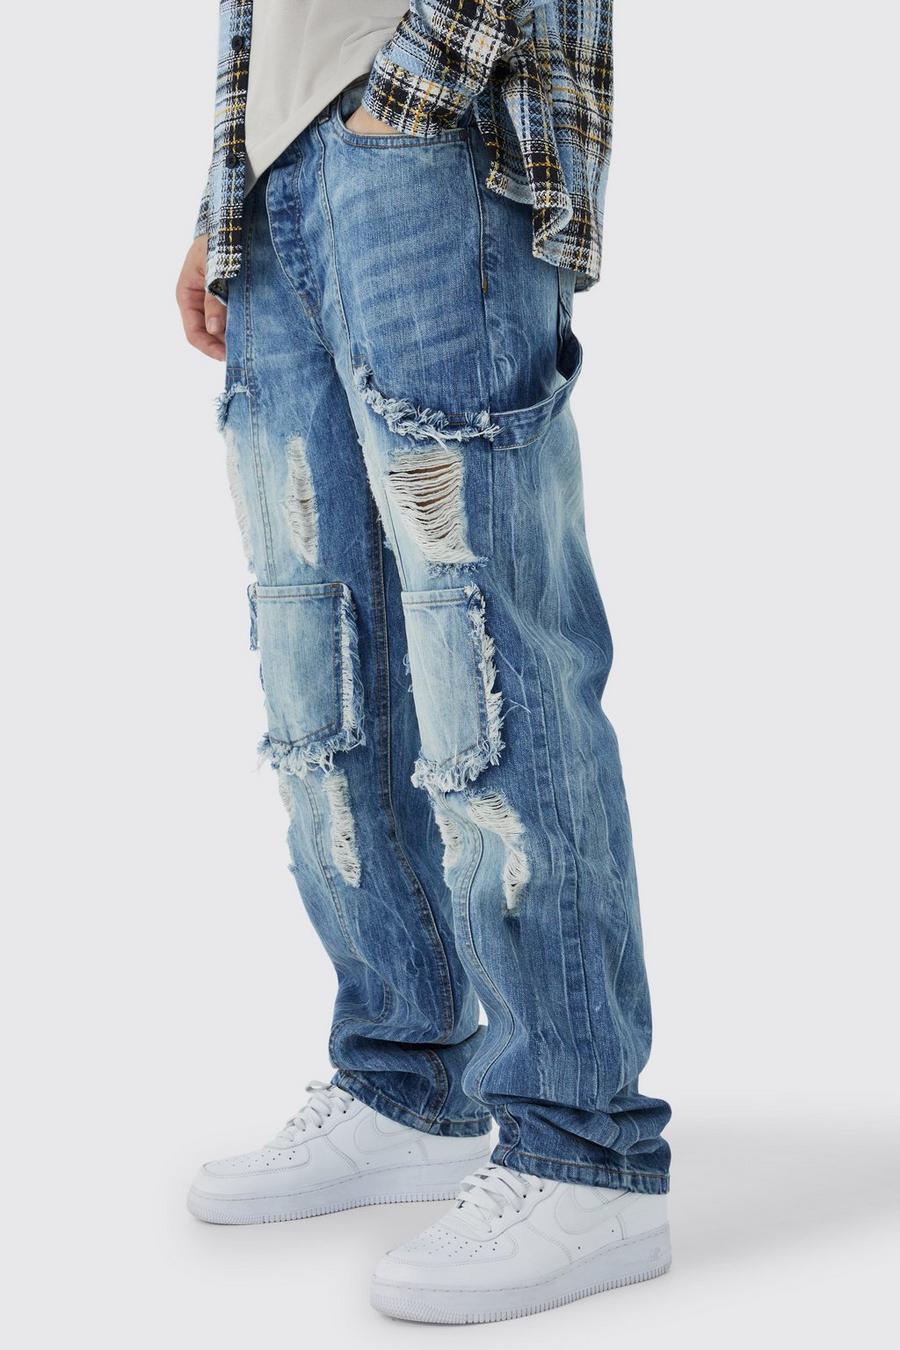 Jeans Cargo Tall rilassati in denim rigido con strappi, Antique blue